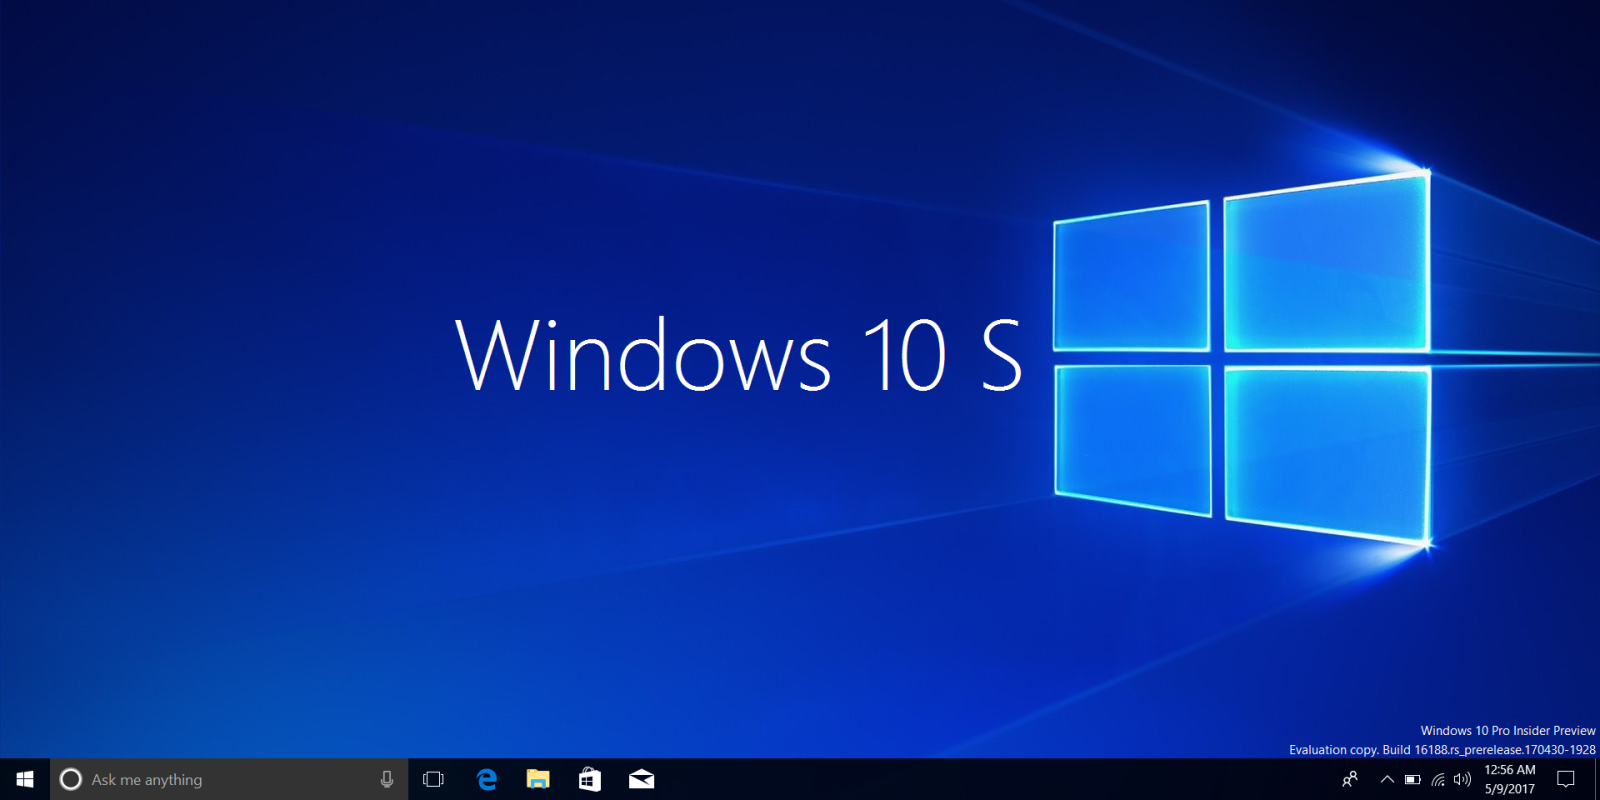 Bạn đang muốn tải ISO Windows 10 S mới nhất để trải nghiệm các tính năng độc đáo? Hãy tải ngay để mọi công việc của bạn trở nên dễ dàng và thú vị hơn bao giờ hết!